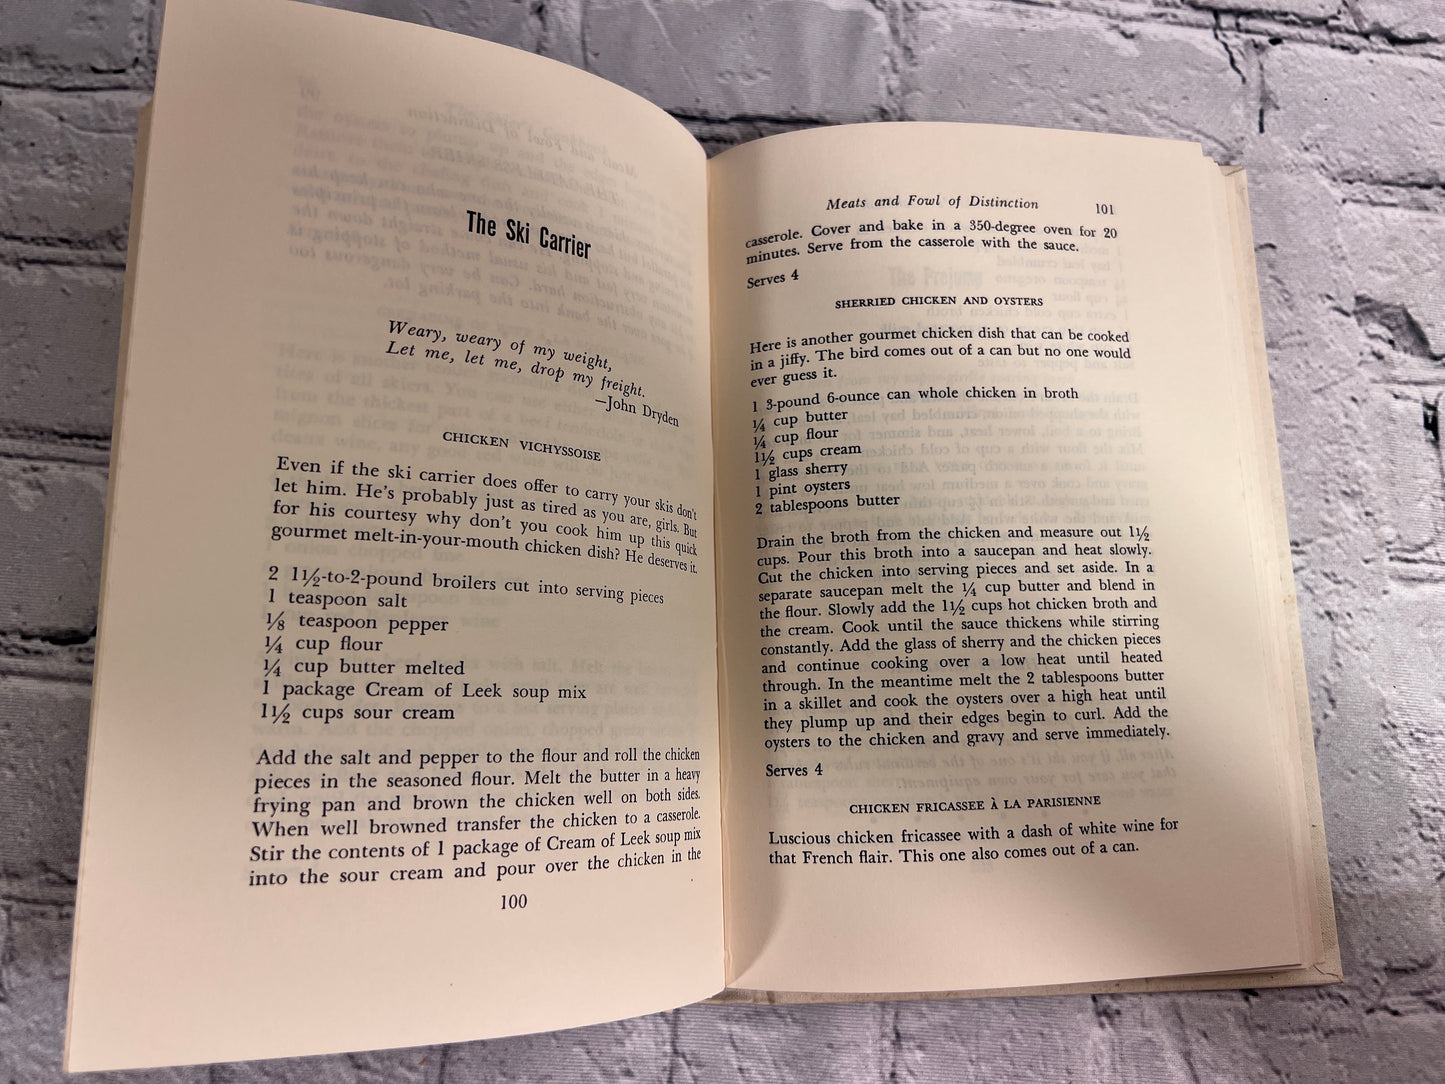 The Skier's Cookbook by Beverlee Sias [1971]